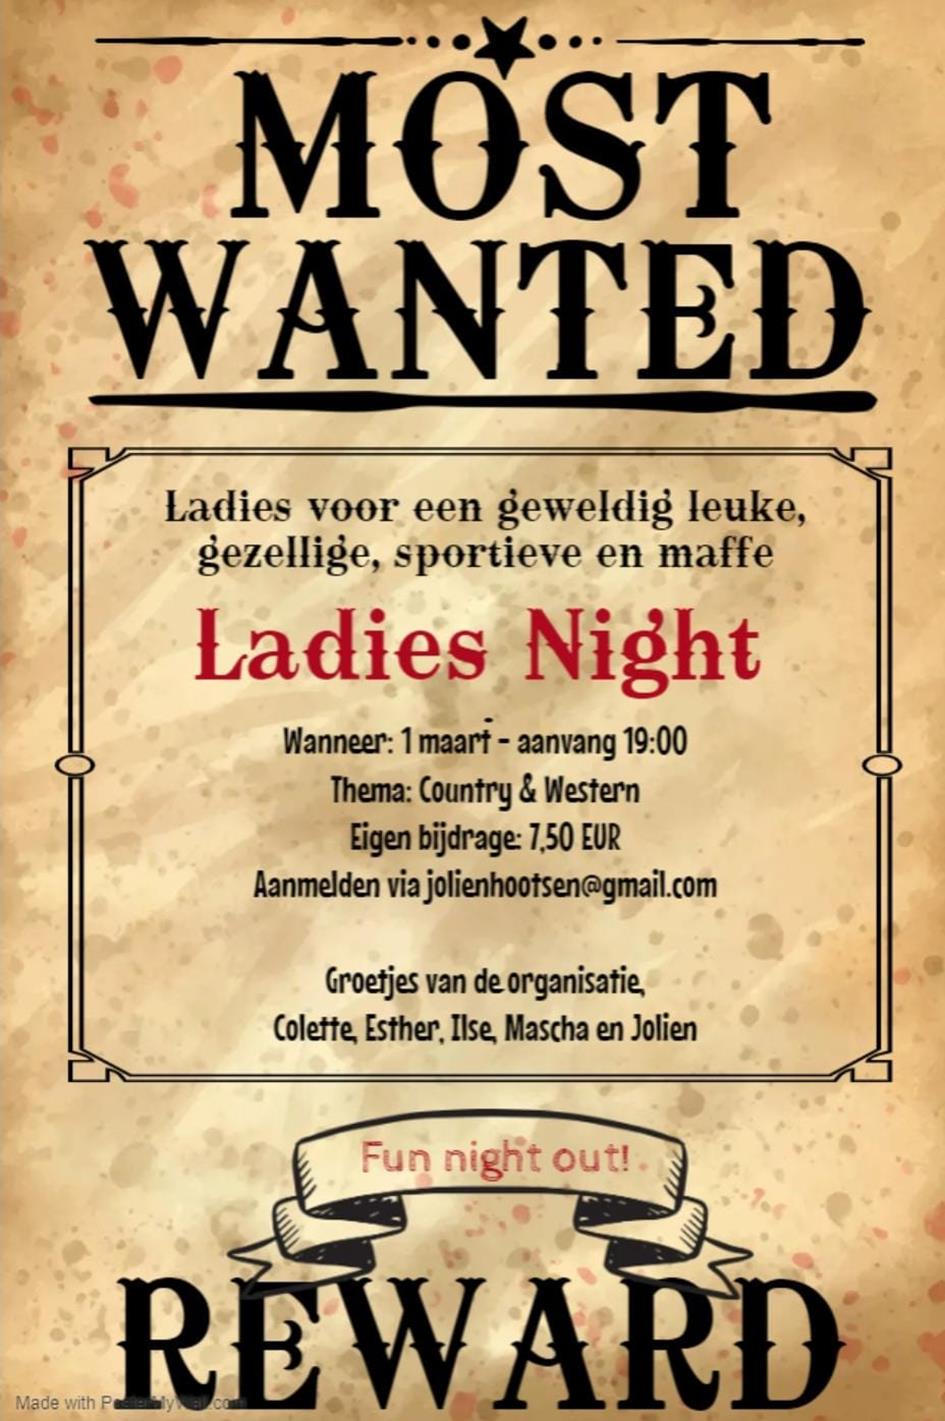 wanted ladies night (1).jpg